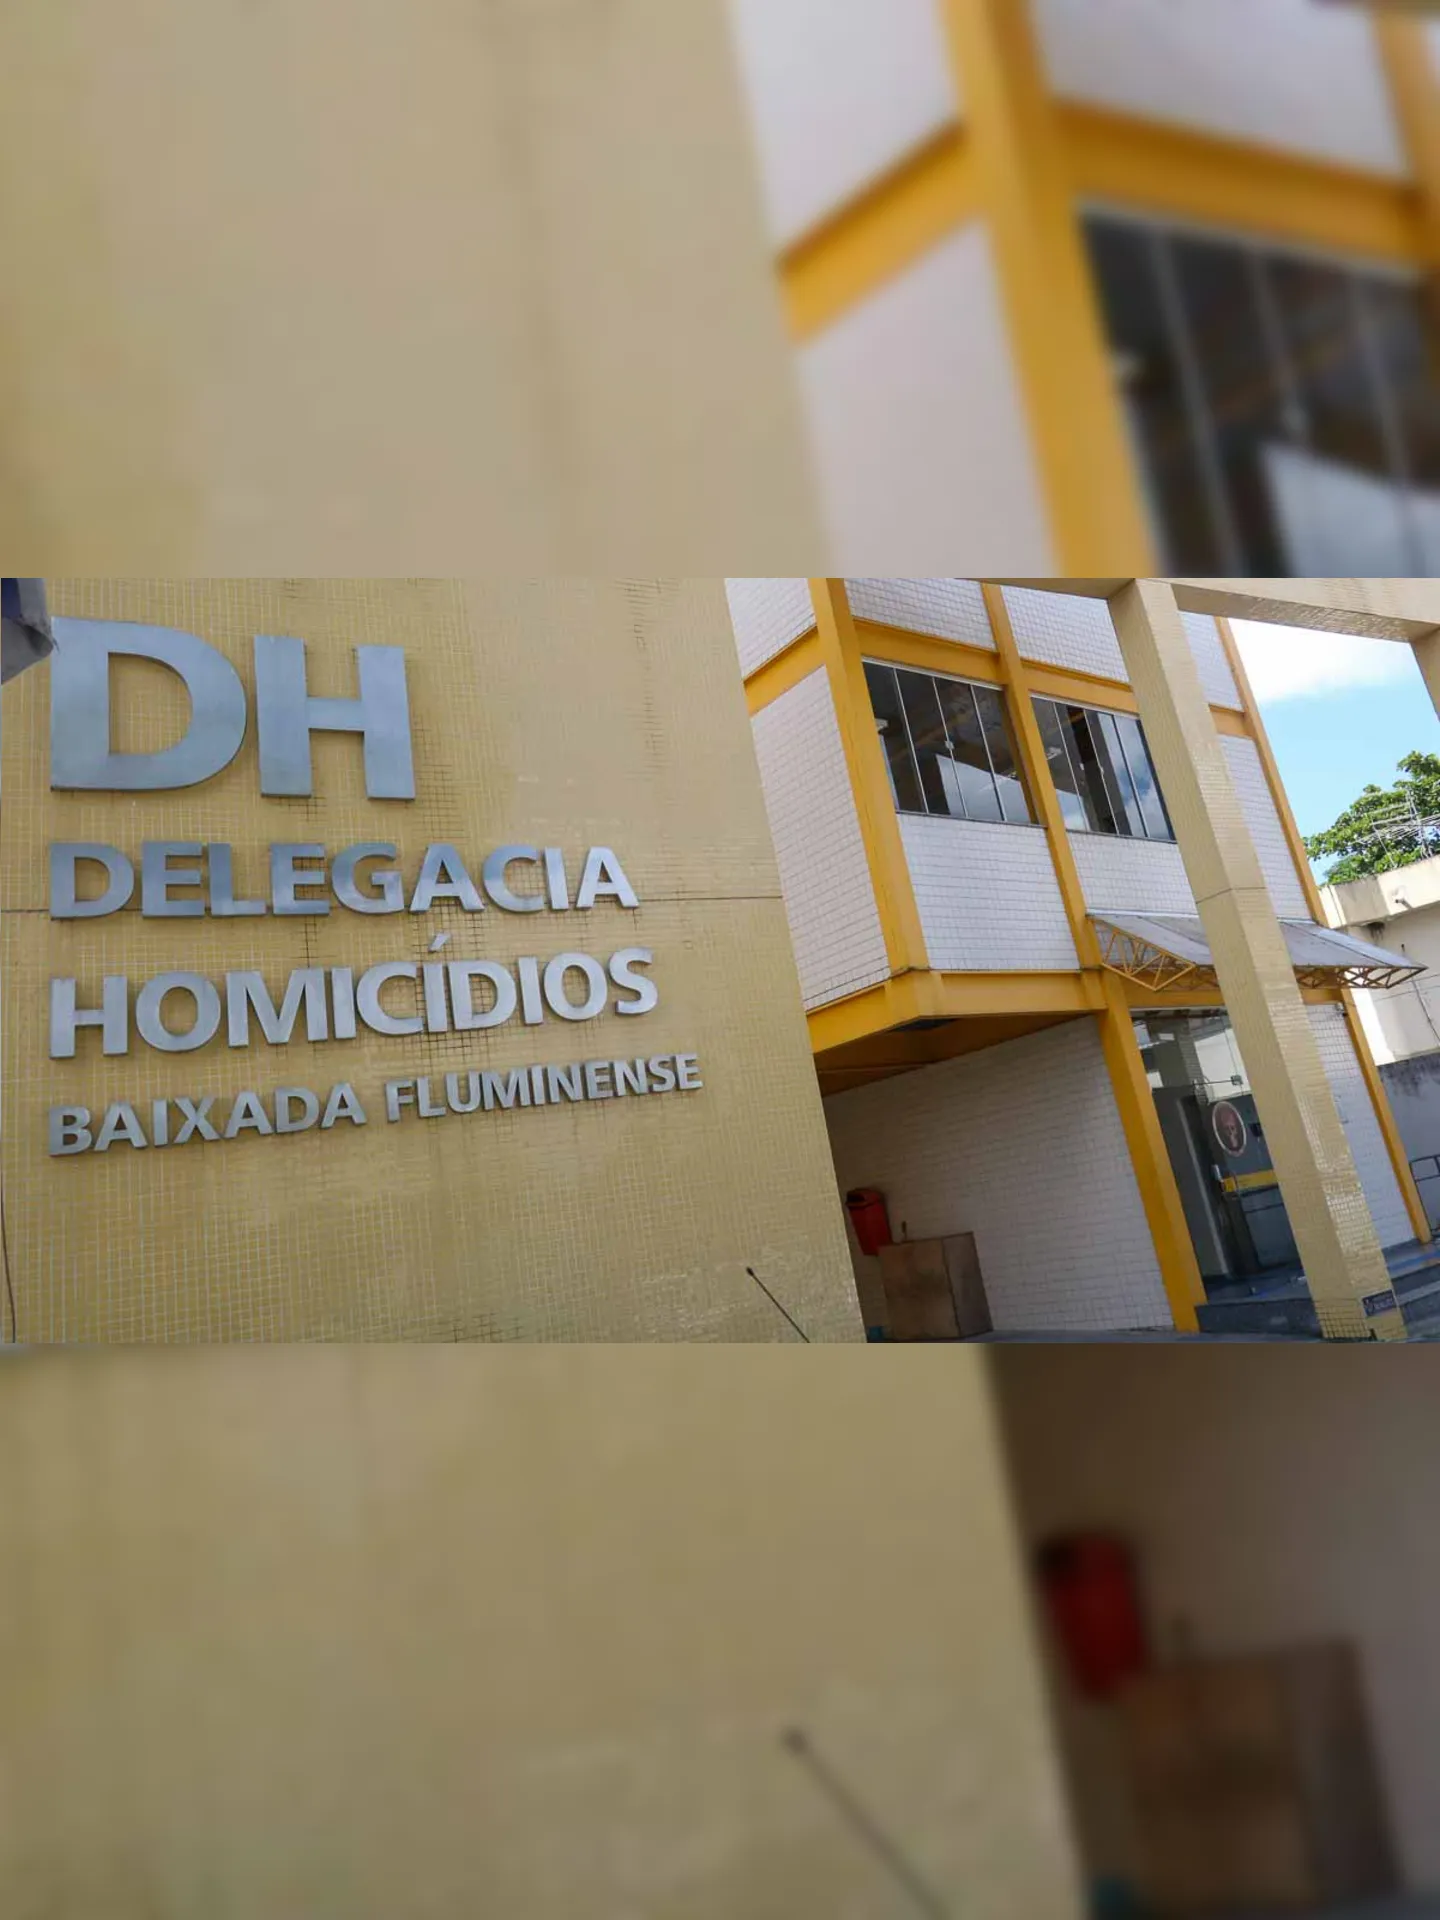 Delegacia de Homicidios da Baixada Fluminense (DHBF) instaurou inquérito para apurar o caso